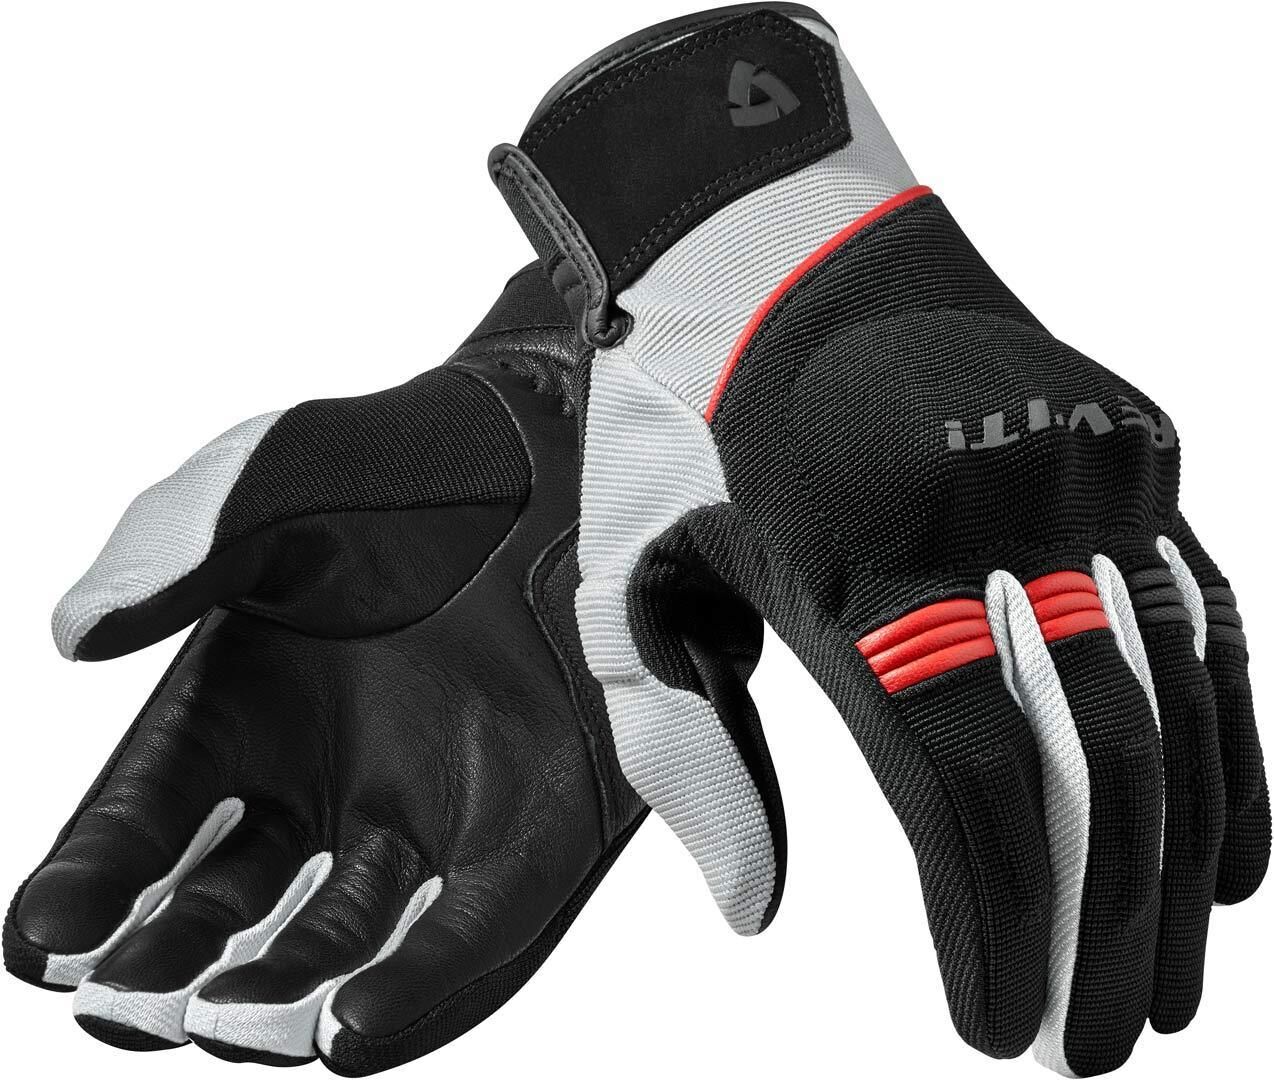 Revit Mosca Motocross Gloves  - Black Red